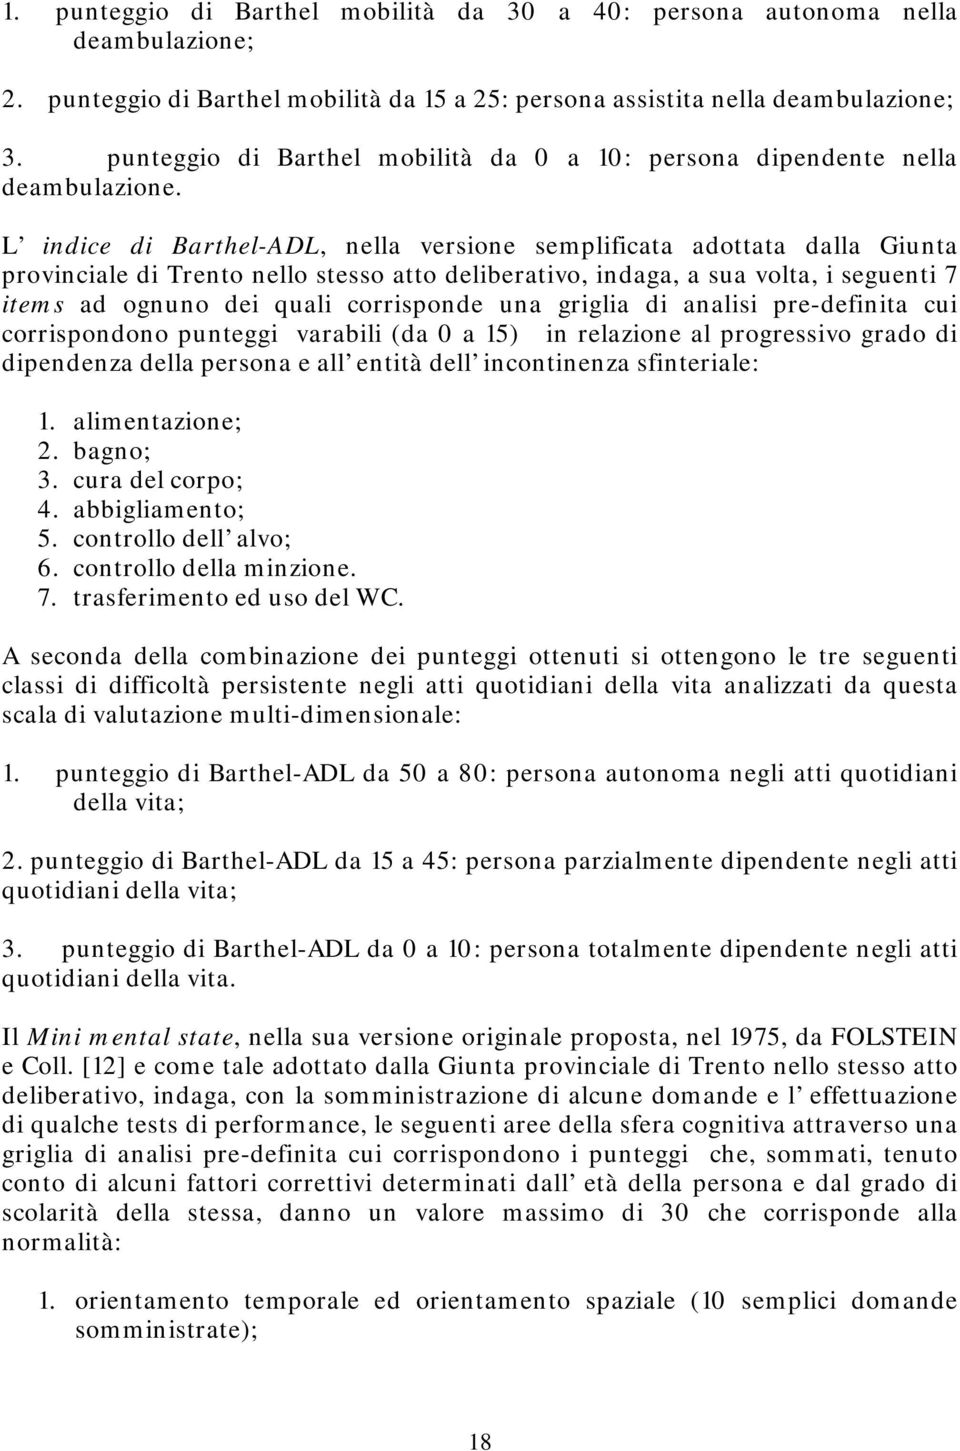 L indice di Barthel-ADL, nella versione semplificata adottata dalla Giunta provinciale di Trento nello stesso atto deliberativo, indaga, a sua volta, i seguenti 7 items ad ognuno dei quali